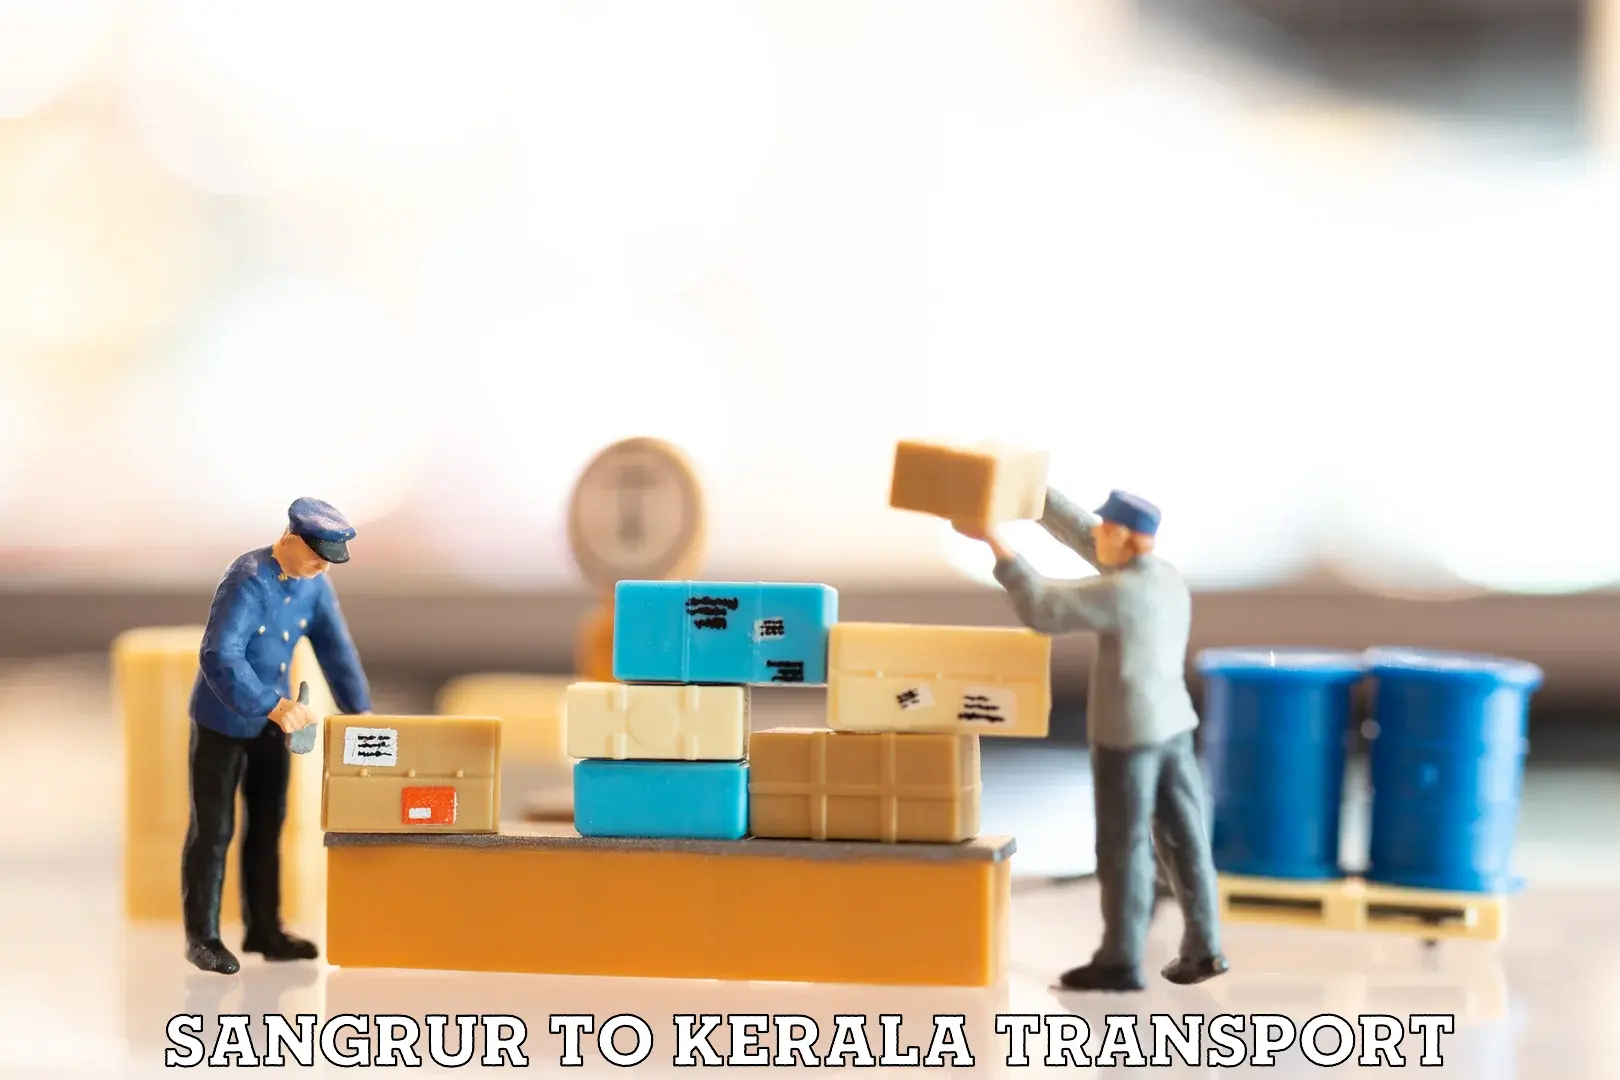 Intercity transport in Sangrur to Kerala